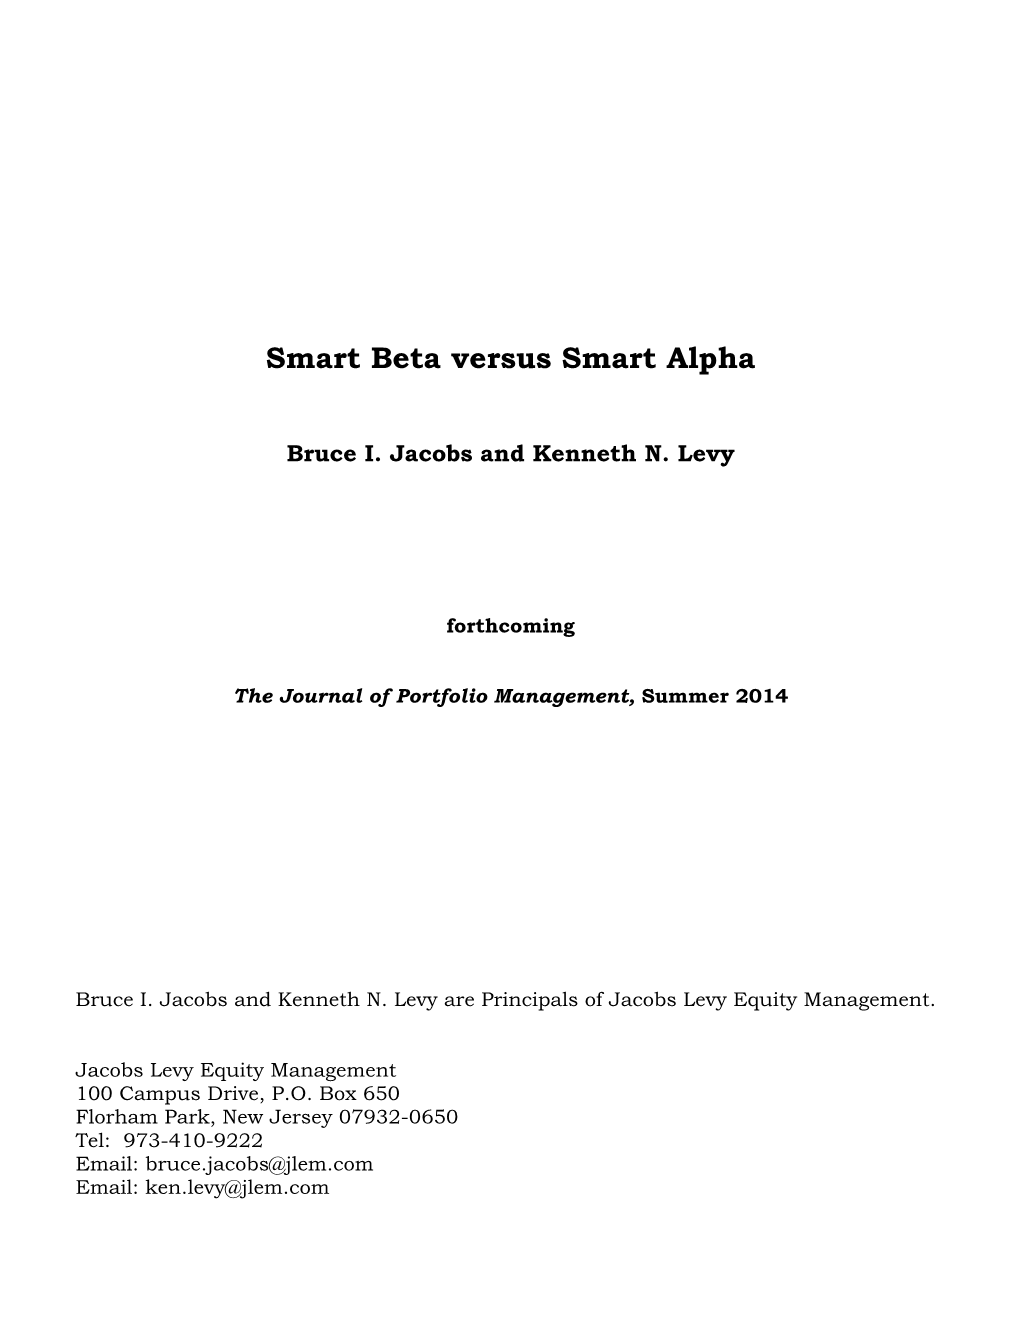 Smart Beta Versus Smart Alpha